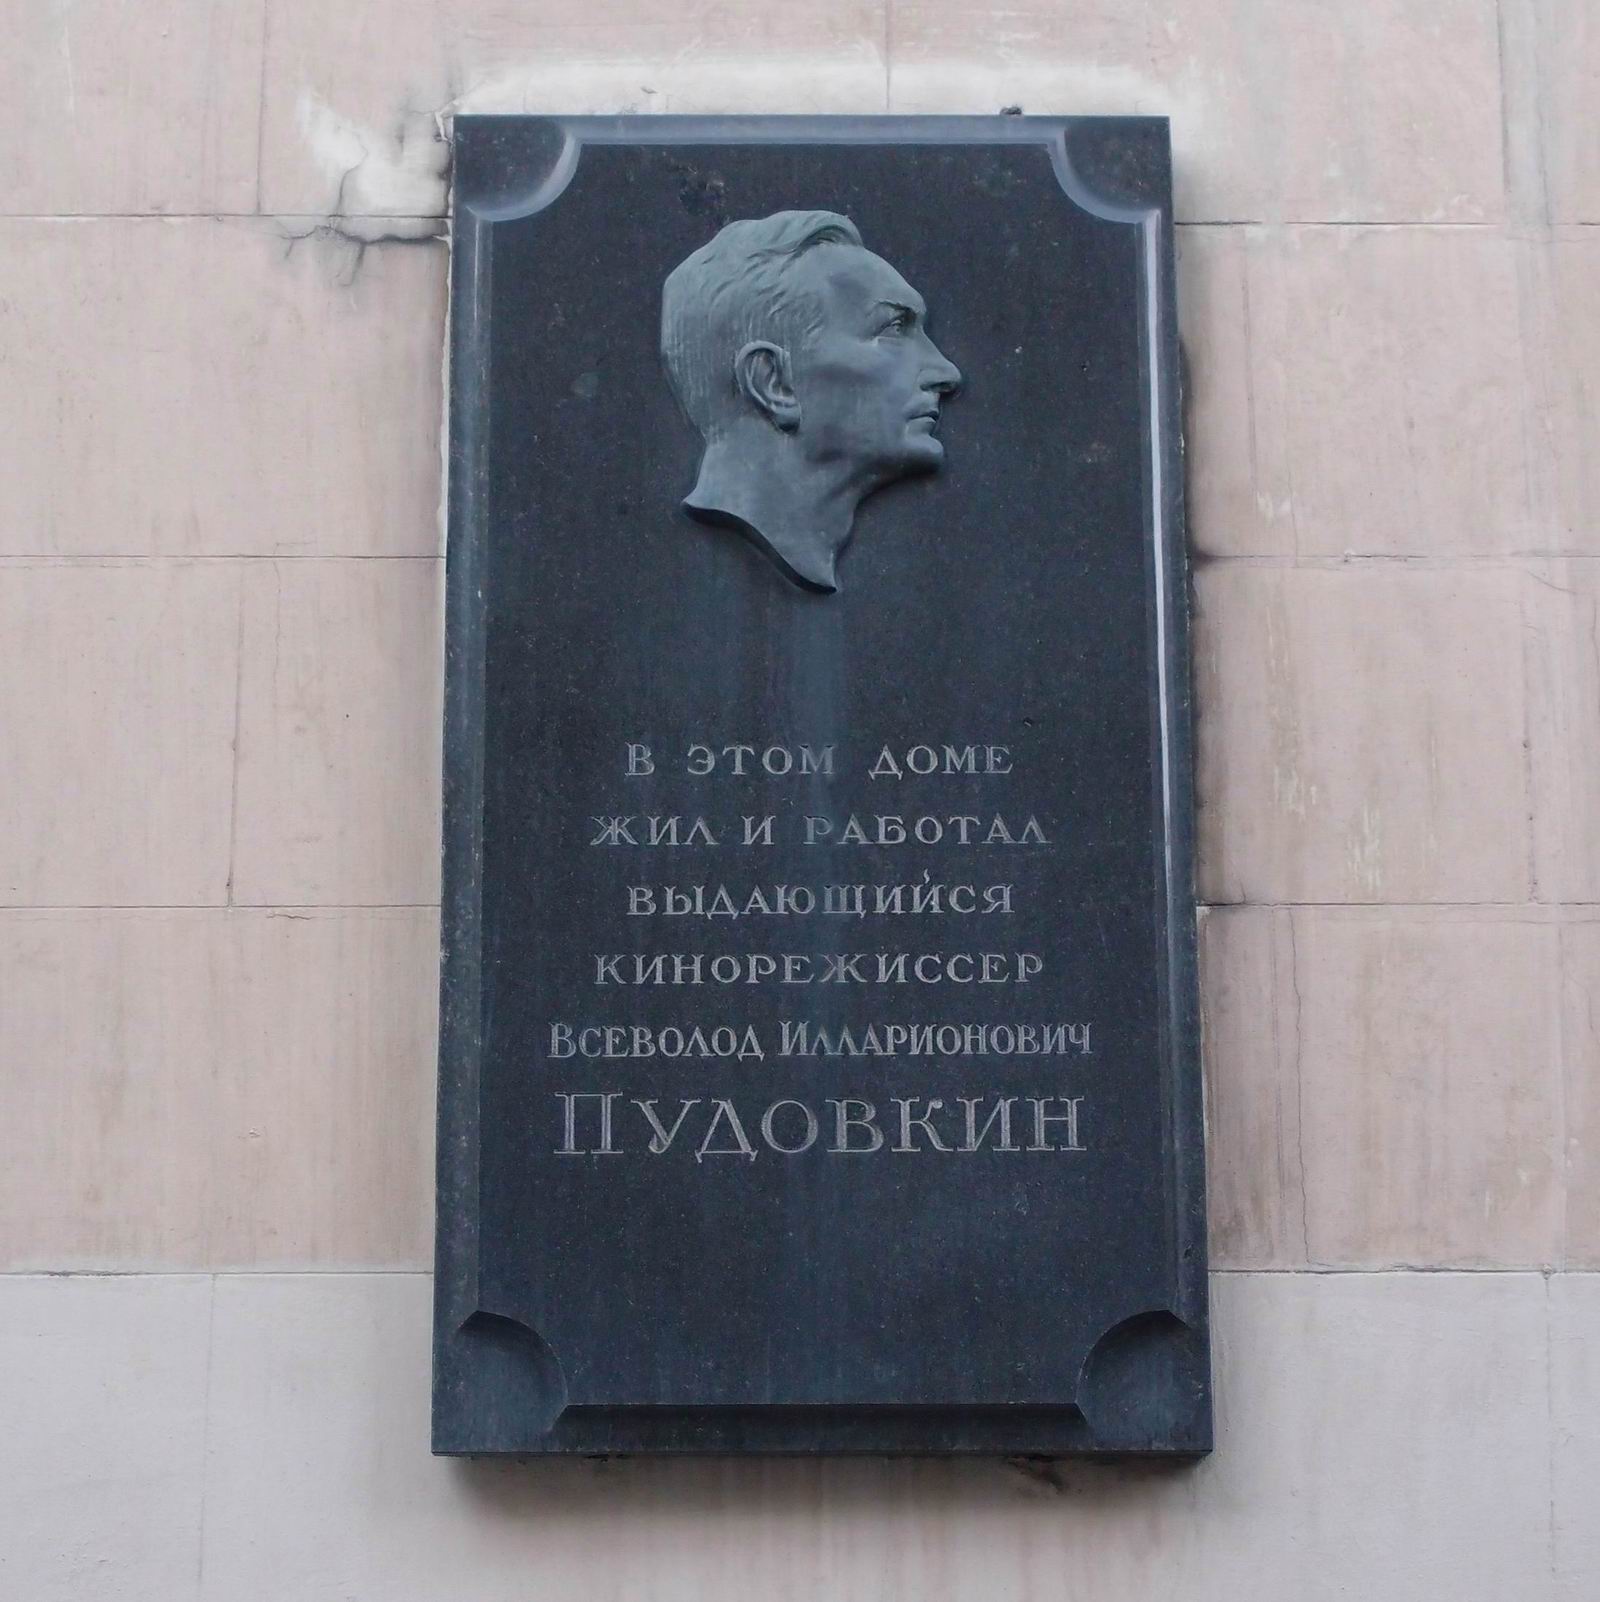 Мемориальная доска Пудовкину В.И. (1893–1953), ск. В.М.Кураев, арх. Л.П.Шатилова, на Поварской улице, дом 31/29, открыта 3.8.1958.